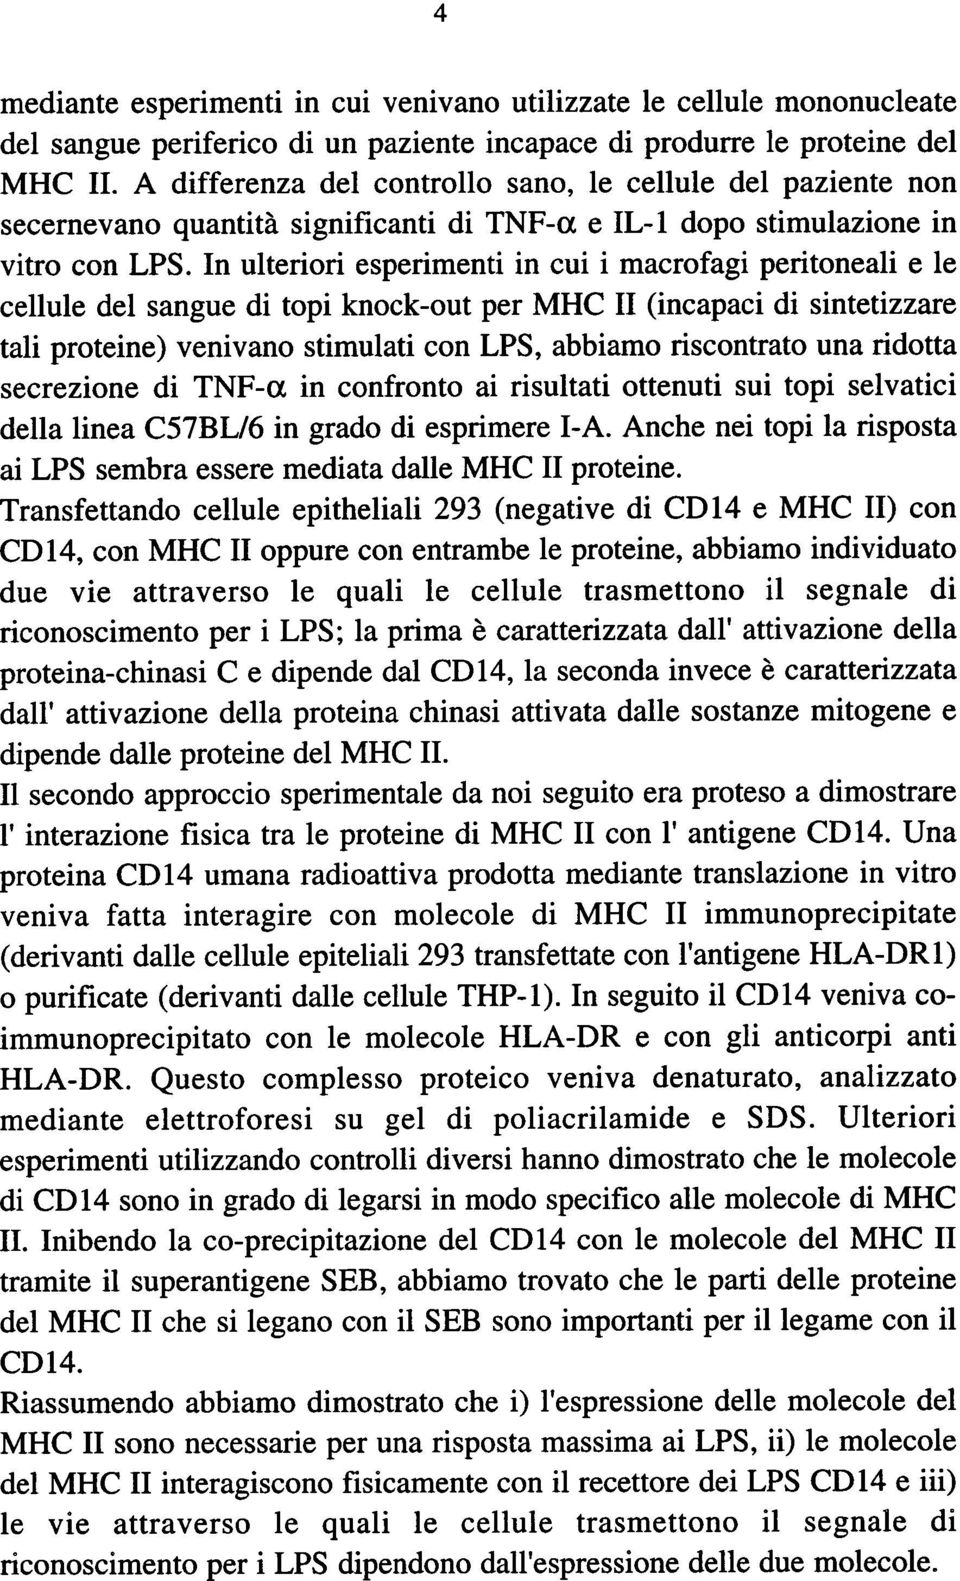 In ulteriori esperimenti in cui i macrofagi peritoneali e le cellule del sangue di topi knock-out per MHC II (incapaci di sintetizzare tali proteine) venivano stimulati con LPS, abbiamo riscontrato